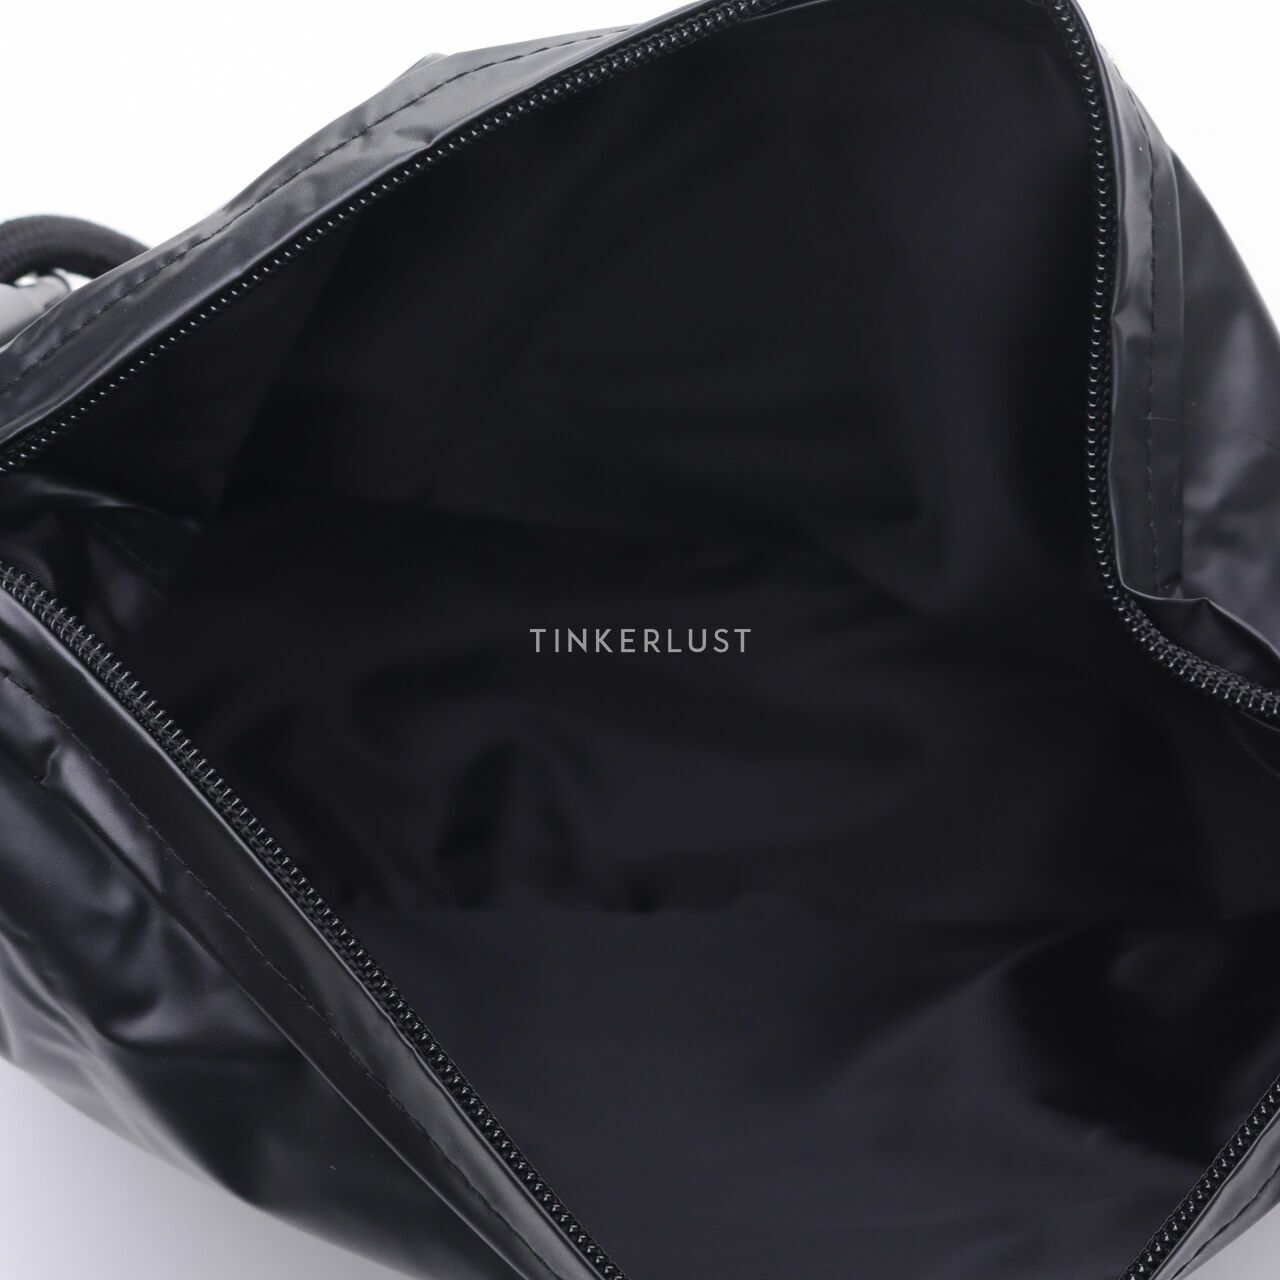 Antidot Black Shoulder Bag